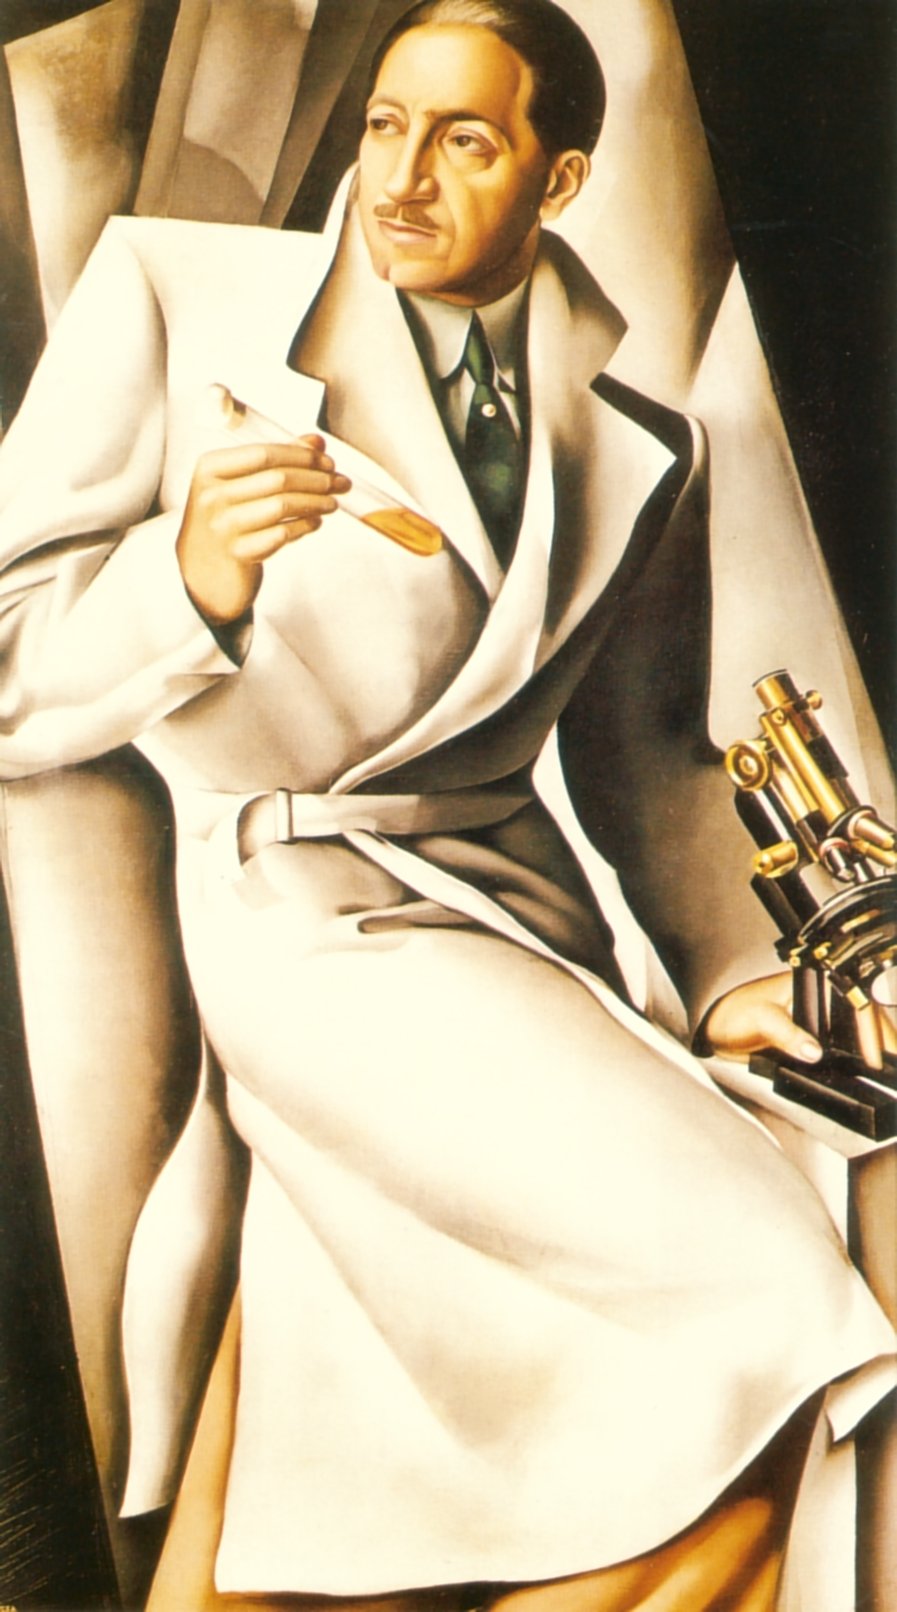 Ritratto del Dr. Boucard by Tamara de Lempicka - 1929 - - collezione privata